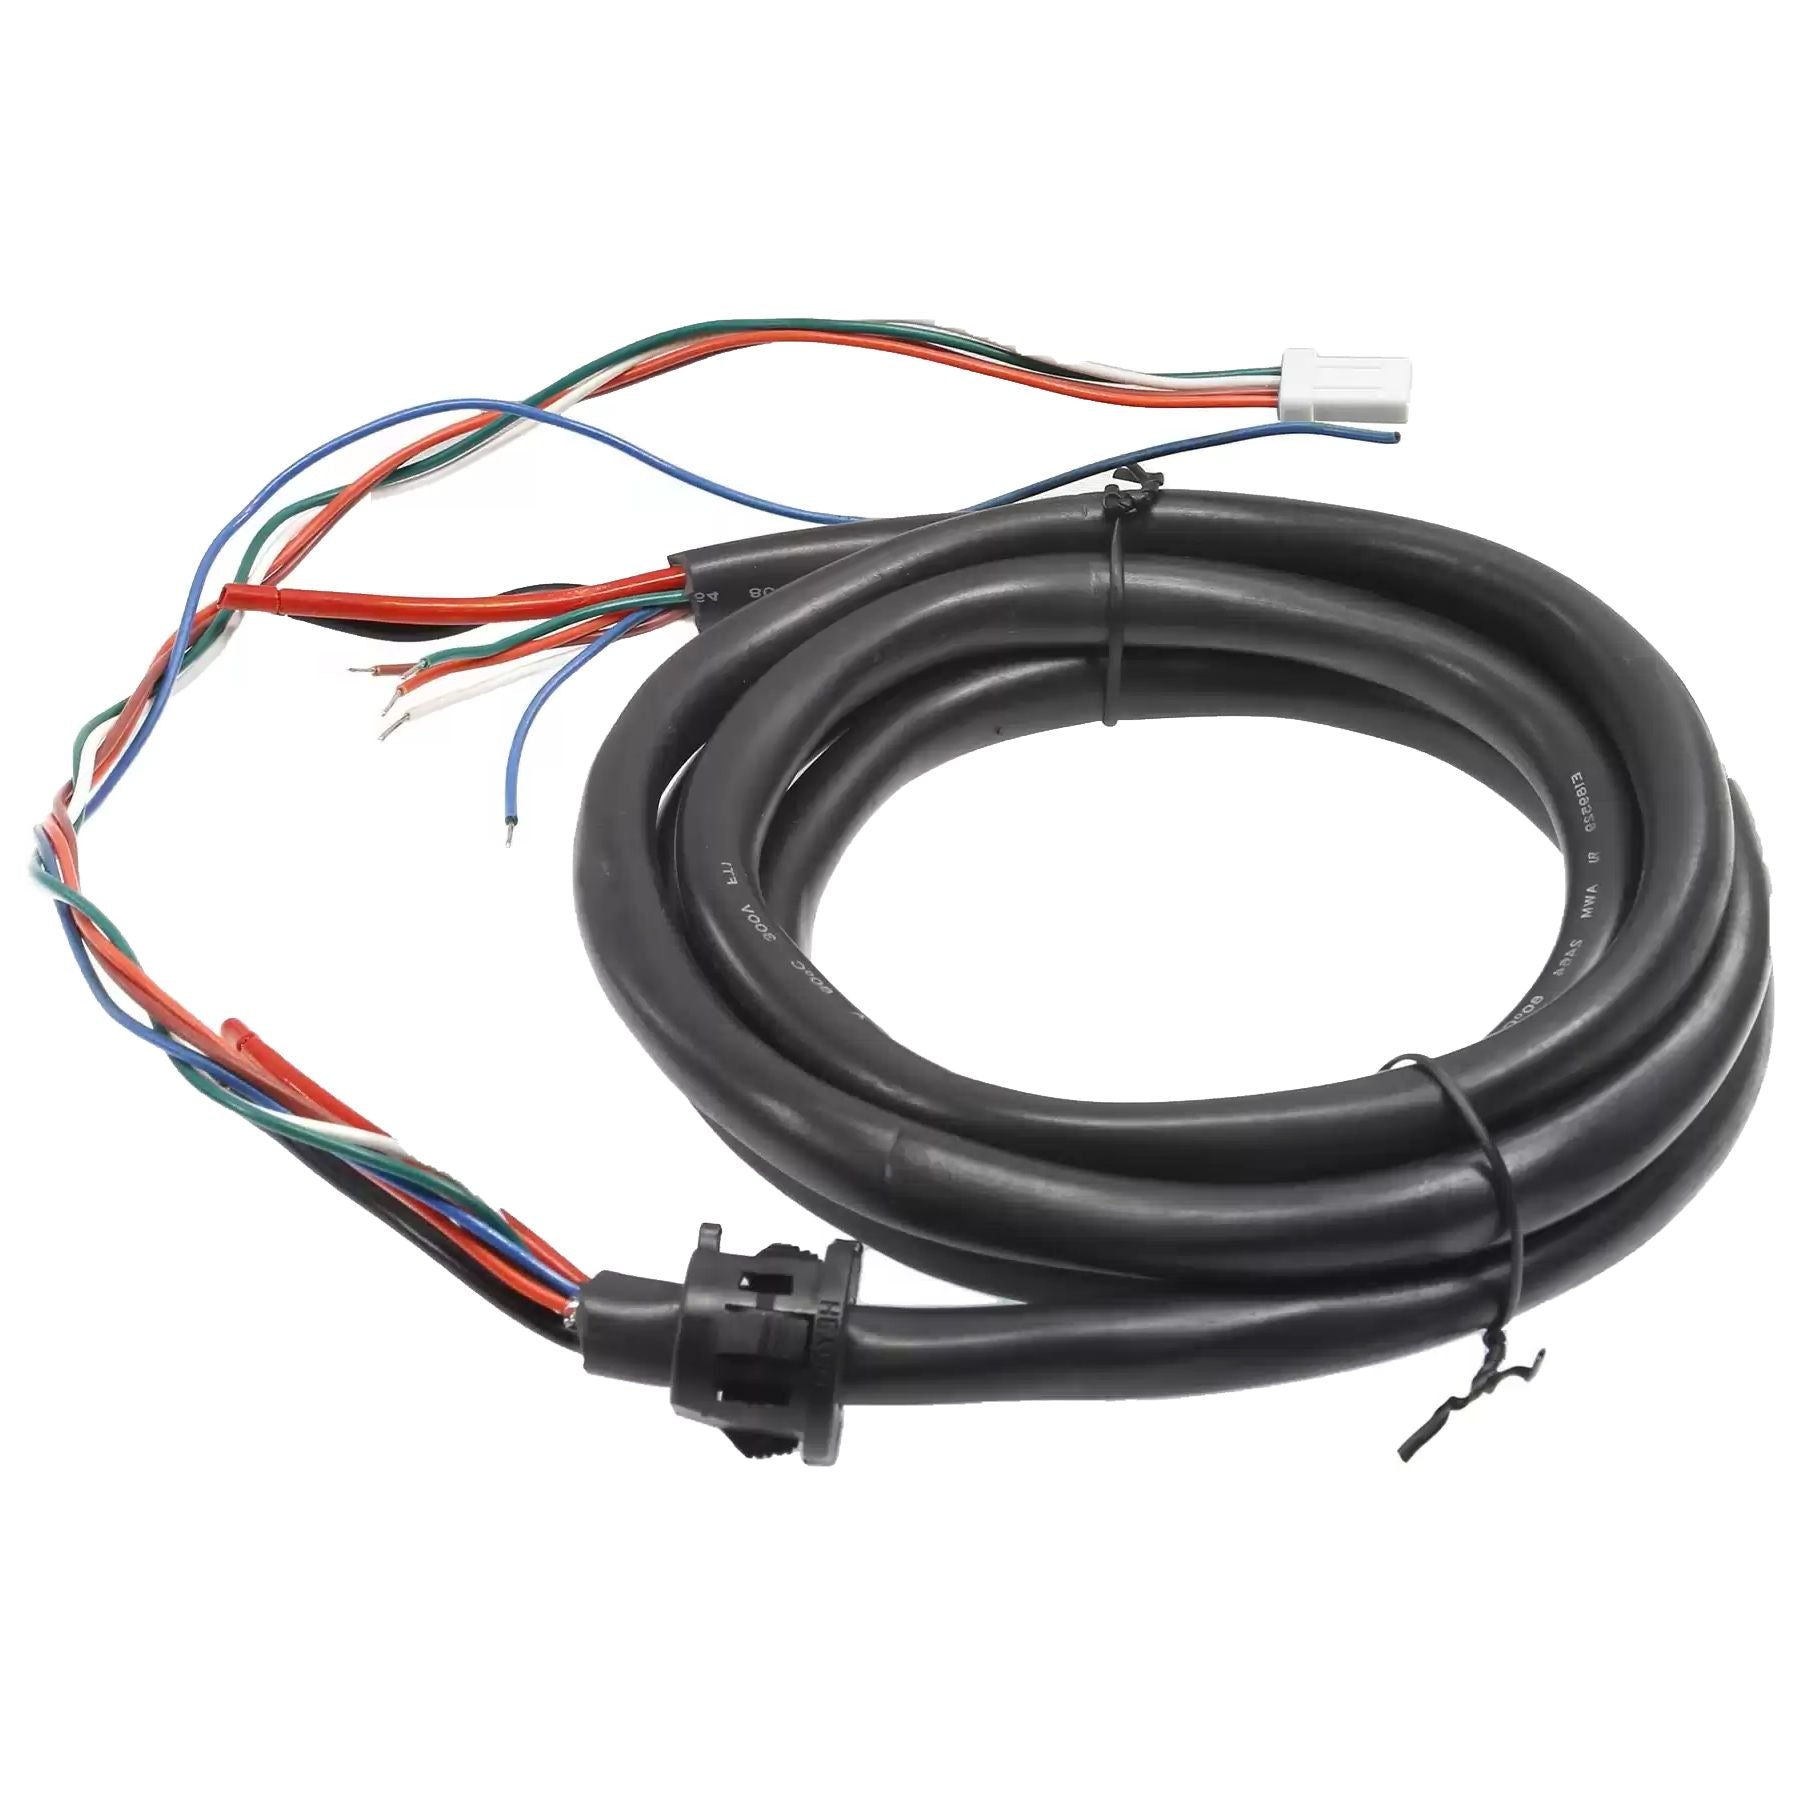 Cable de alimentación lineal R4887